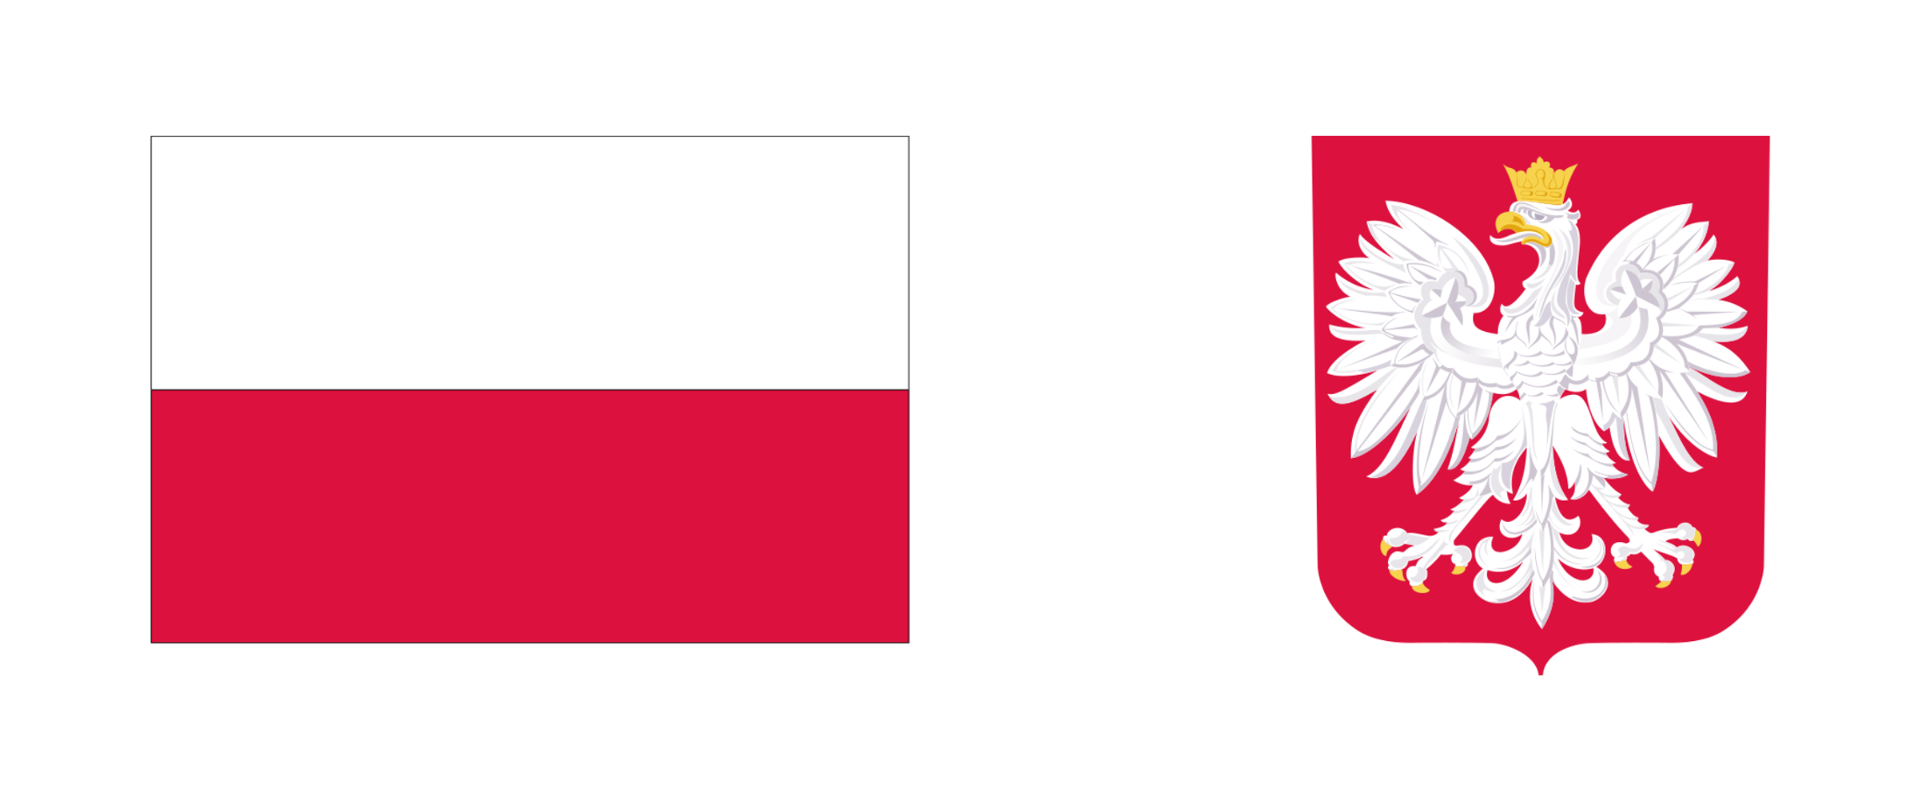 Flaga Polski z białym górnym i czerwonym dolnym pasem obok herbu Polski z białym orłem w koronie na czerwonym tle.